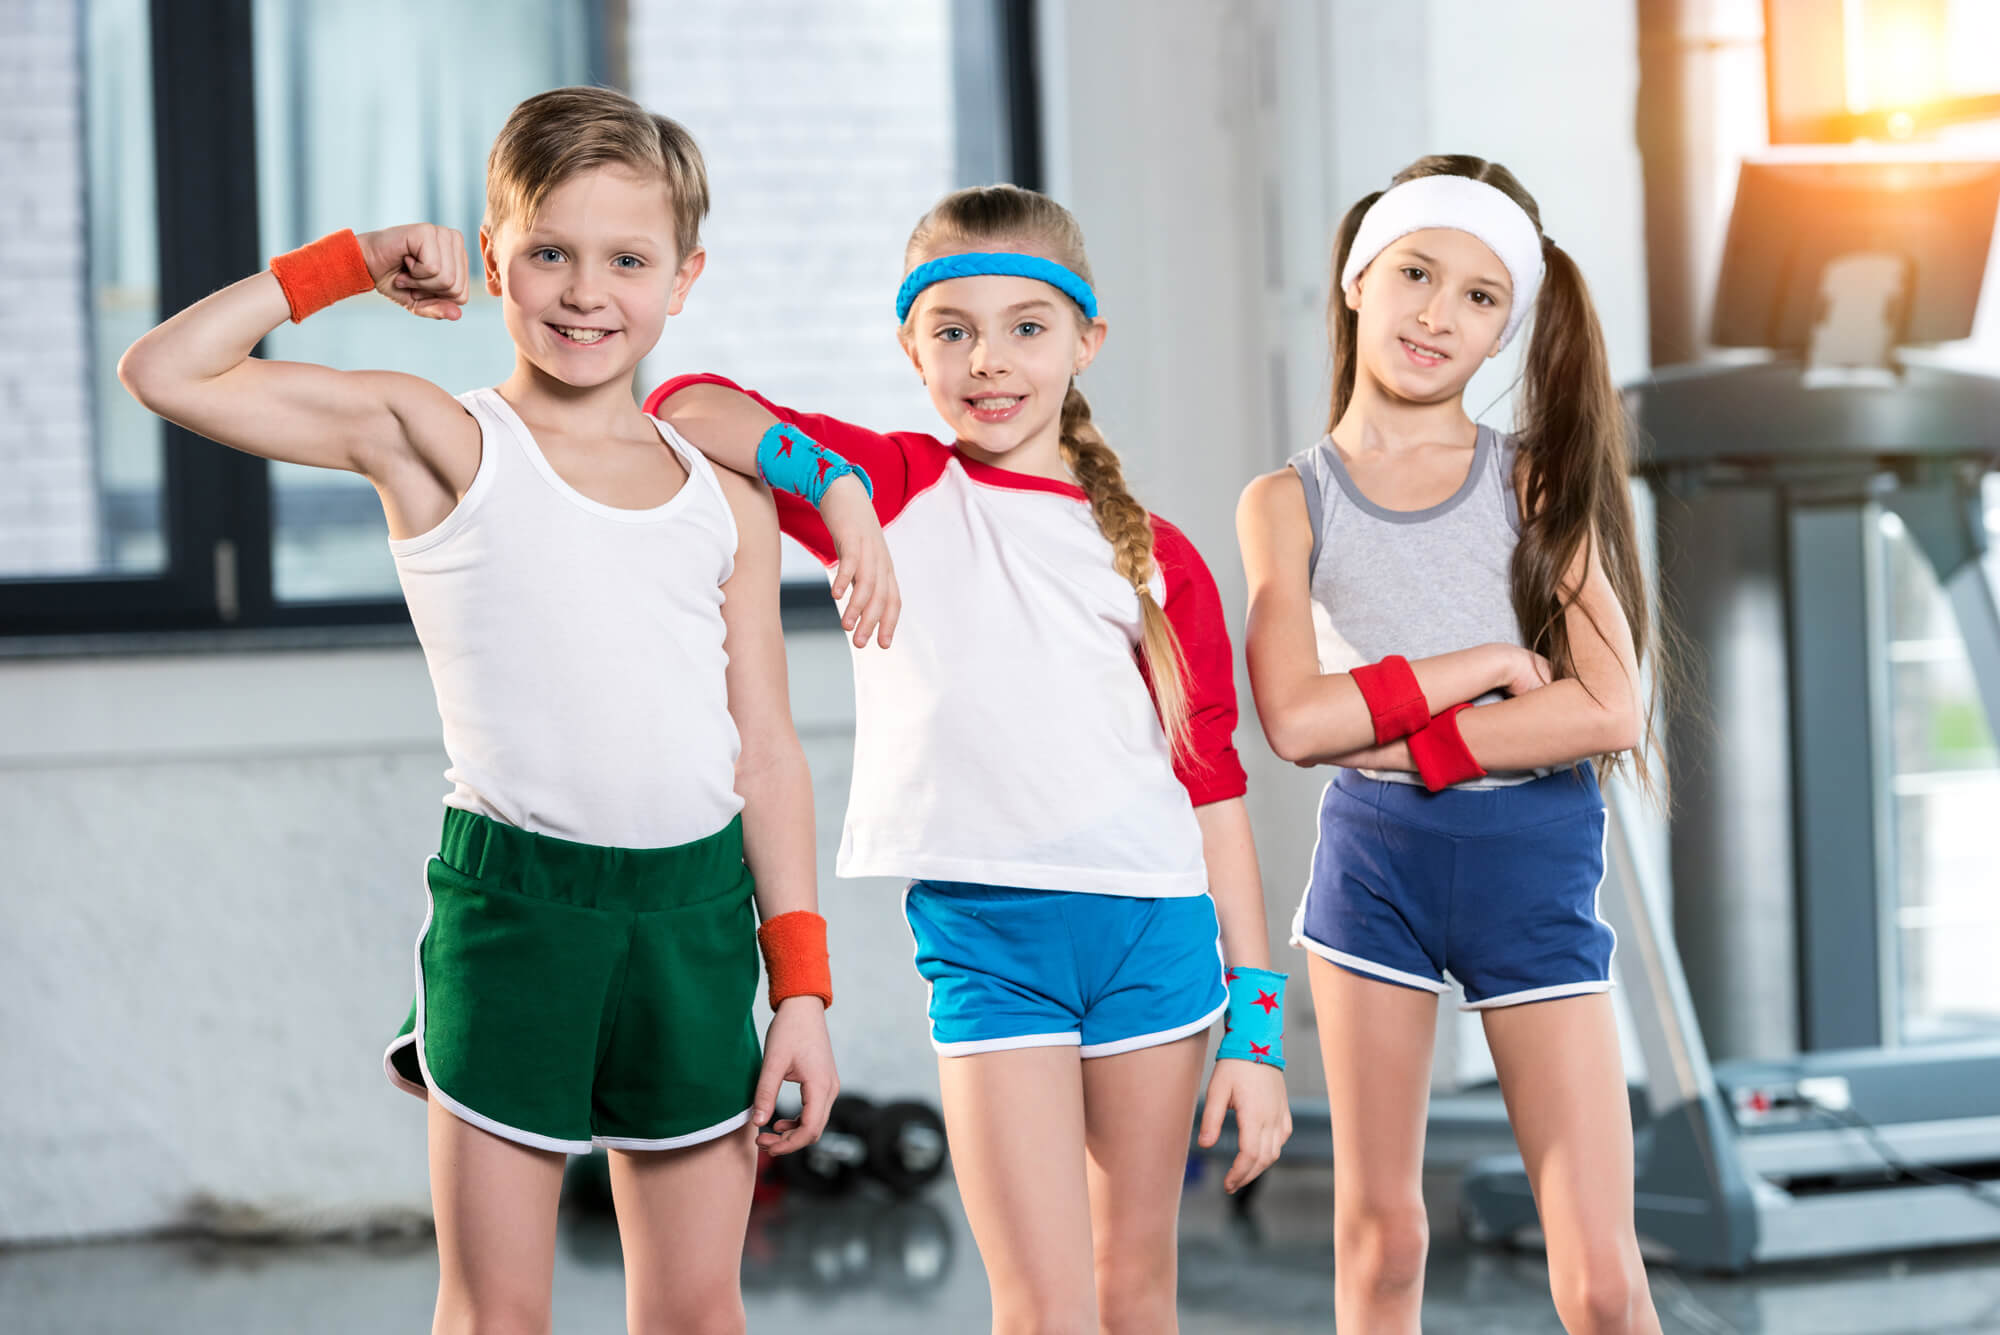 Спортивная школа возраст. Спорт дети. Спортивная одежда в школу. Спортивный стиль школа. Одежда для занятия спортом для детей.